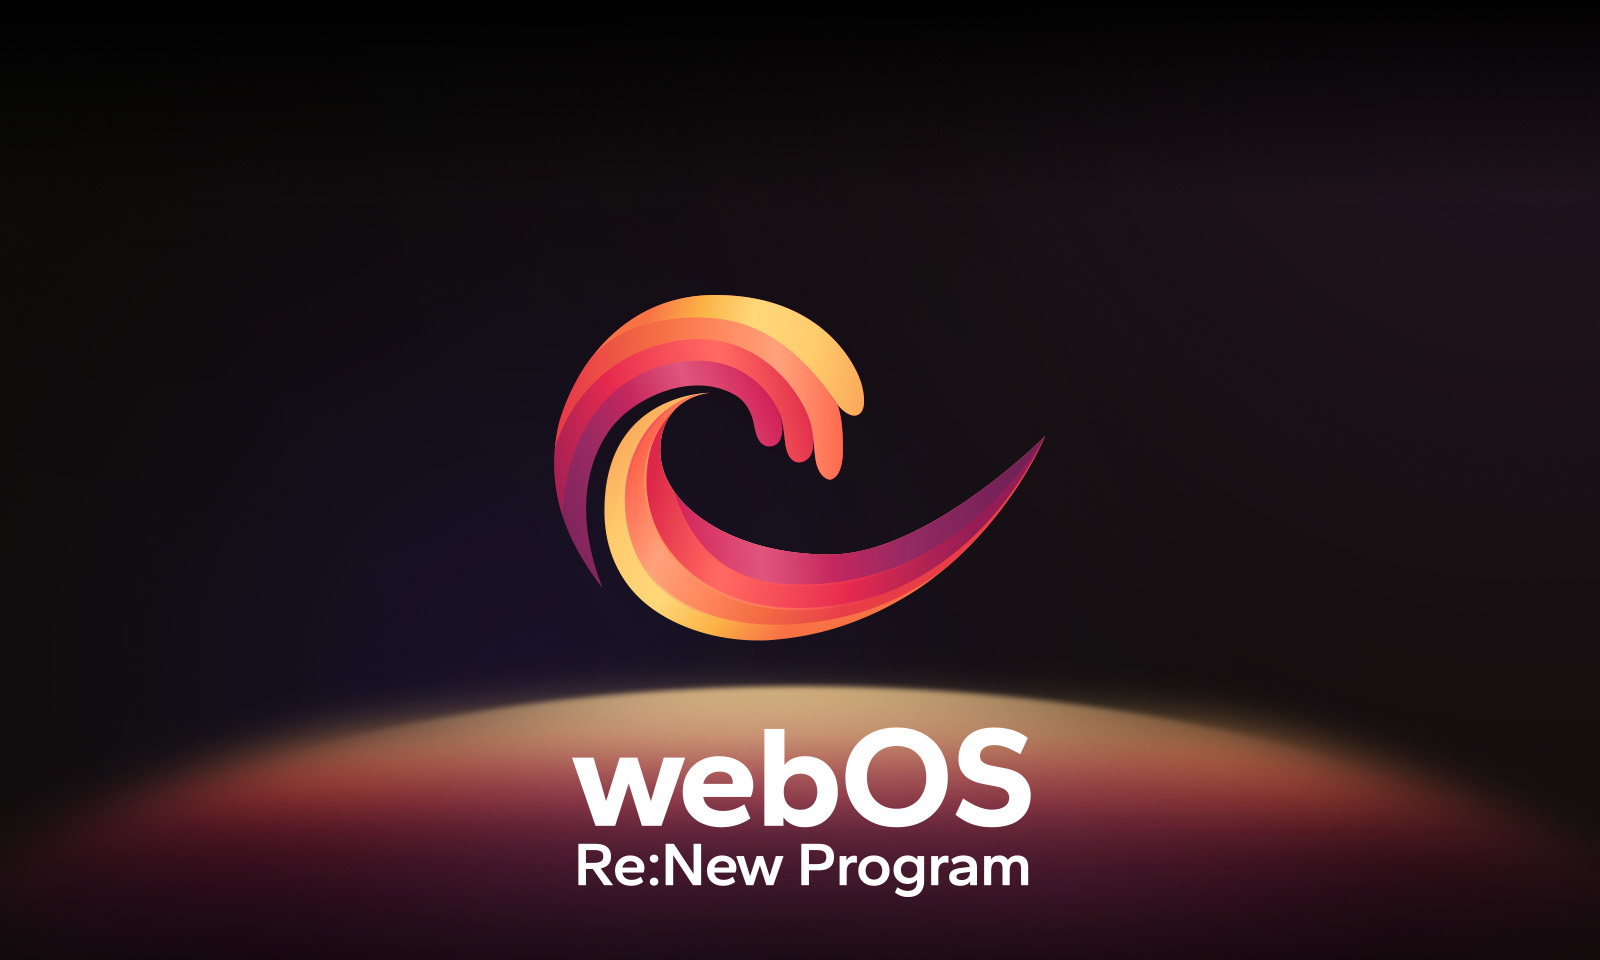 „webOS“ logotipas kabo centre juodame fone, o žemiau esanti erdvė apšviesta raudona, oranžine ir geltona logotipo spalvomis. Po logotipu matomi žodžiai „webOS Re: New Program“.